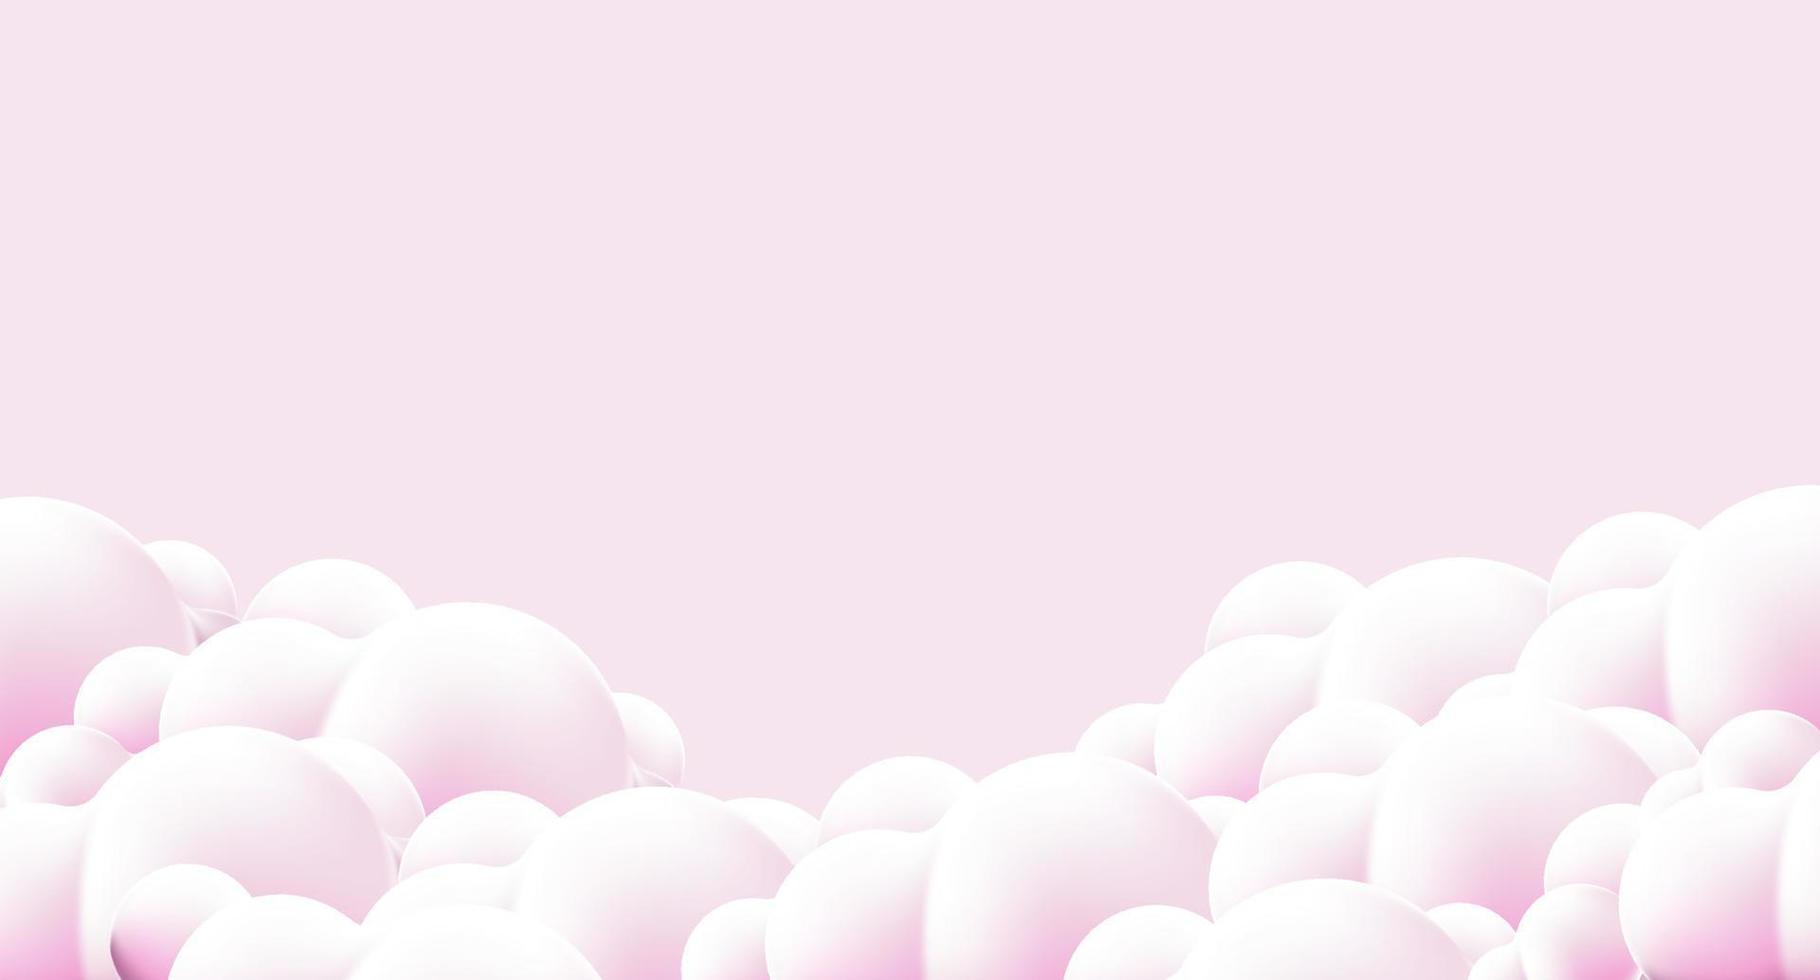 lindas nuvens fofas no fundo do céu rosa. nuvens na bandeira do céu rosa. nuvens vetoriais. fronteira de nuvens no fundo rosa. nuvem fofa realista. ilustração vetorial vetor